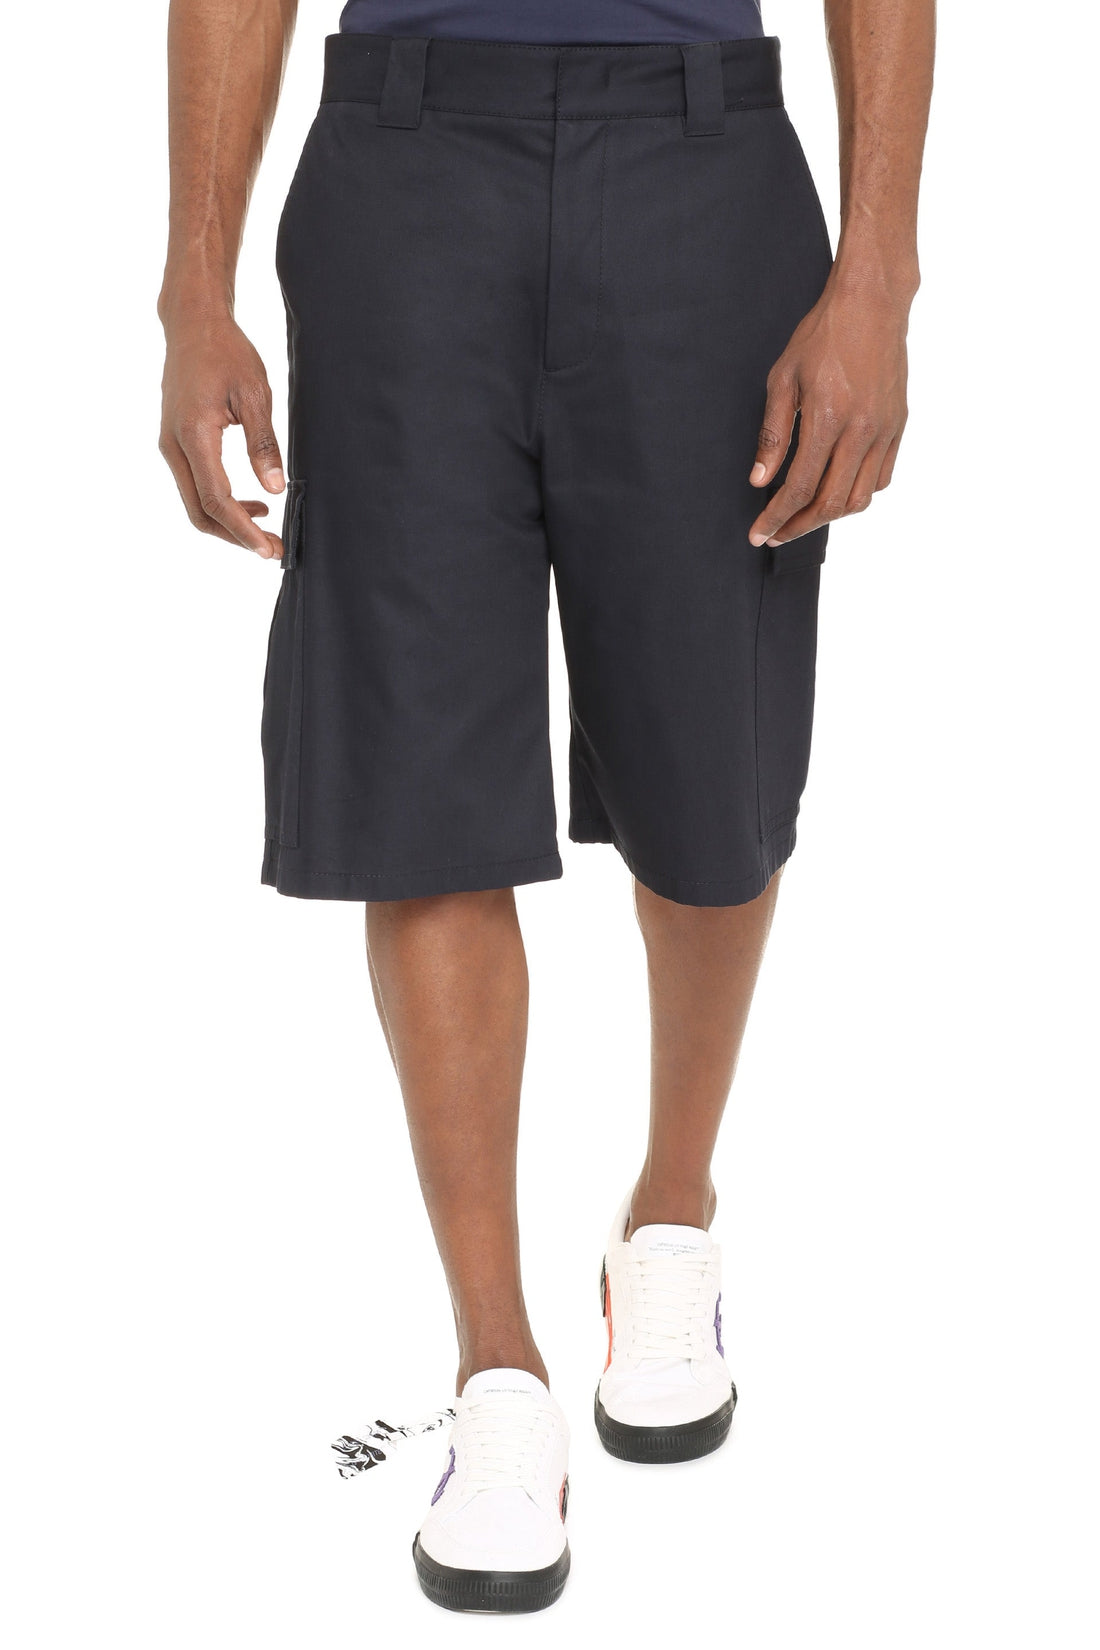 MSGM-OUTLET-SALE-Cotton cargo bermuda shorts-ARCHIVIST